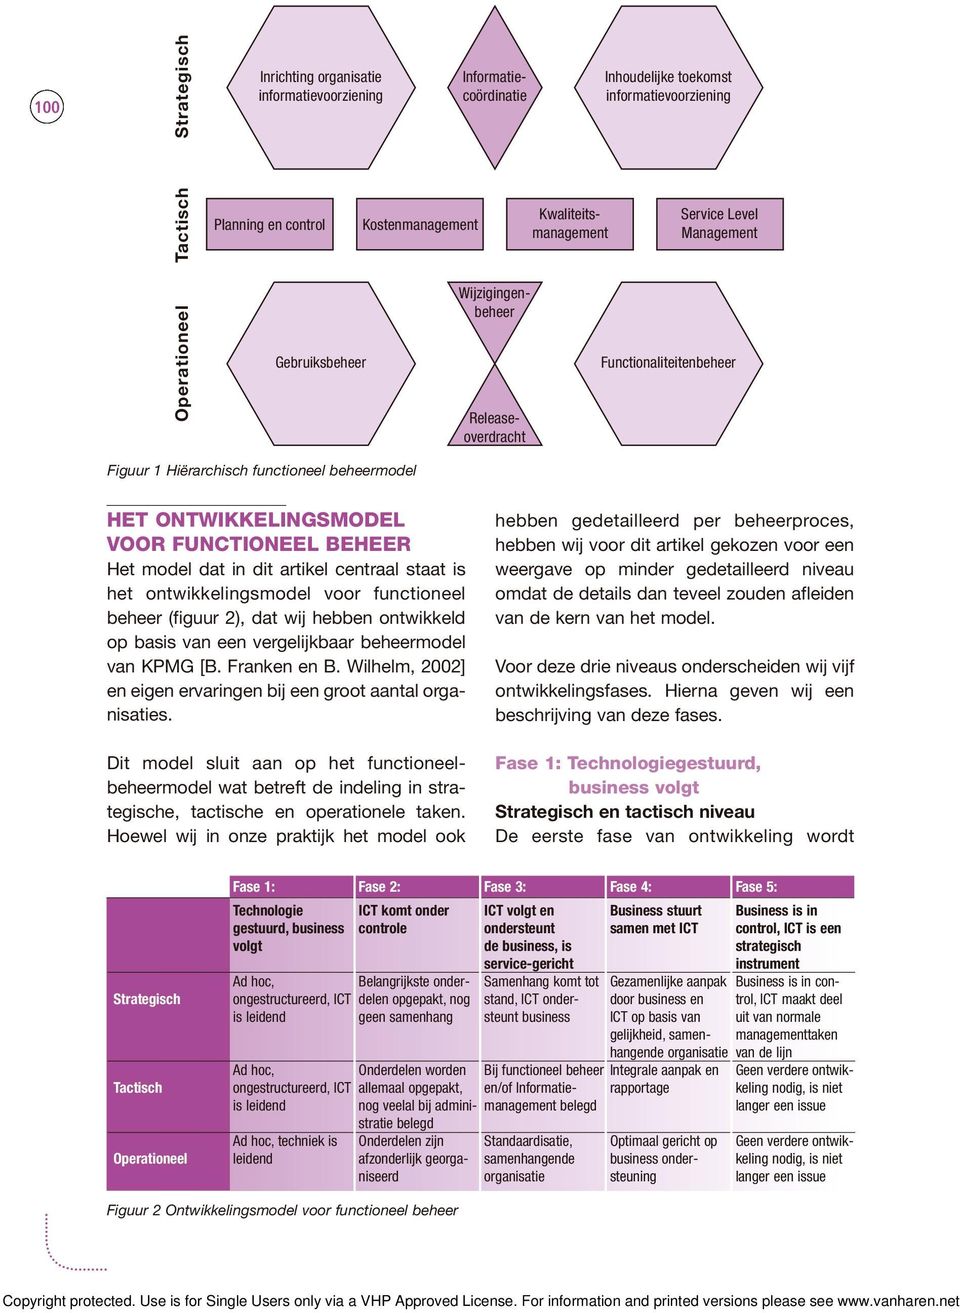 FUNCTIONEEL BEHEER Het model dat in dit artikel centraal staat is het ontwikkelingsmodel voor functioneel beheer (figuur 2), dat wij hebben ontwikkeld op basis van een vergelijkbaar beheermodel van